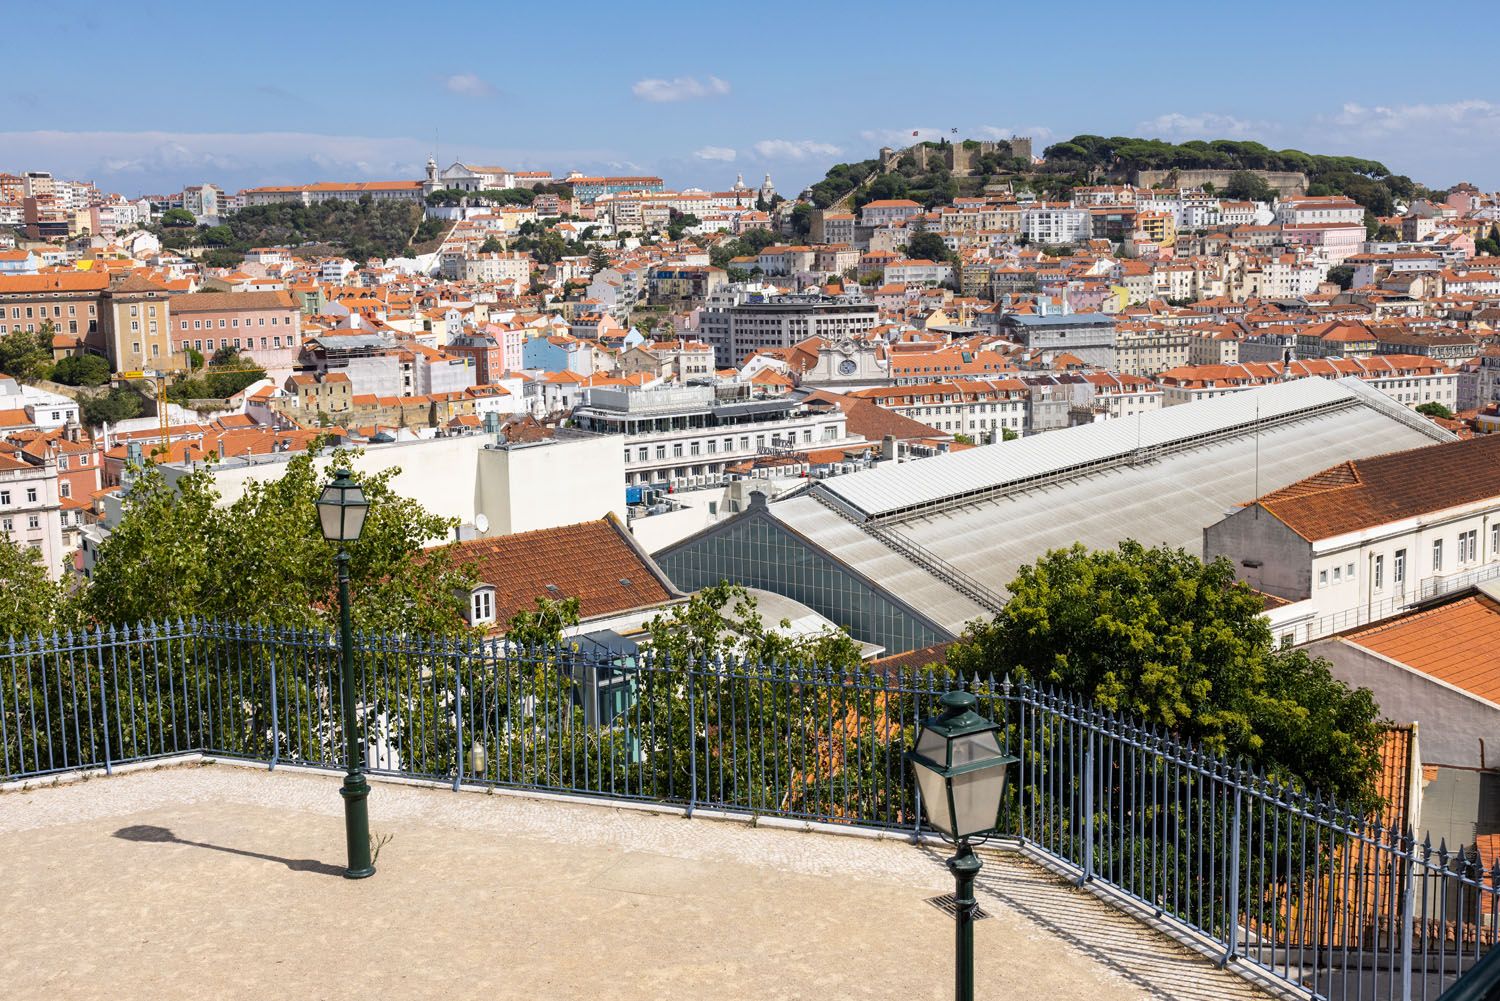 Miradouro do São Pedro de Alcântara | 2 days in Lisbon itinerary